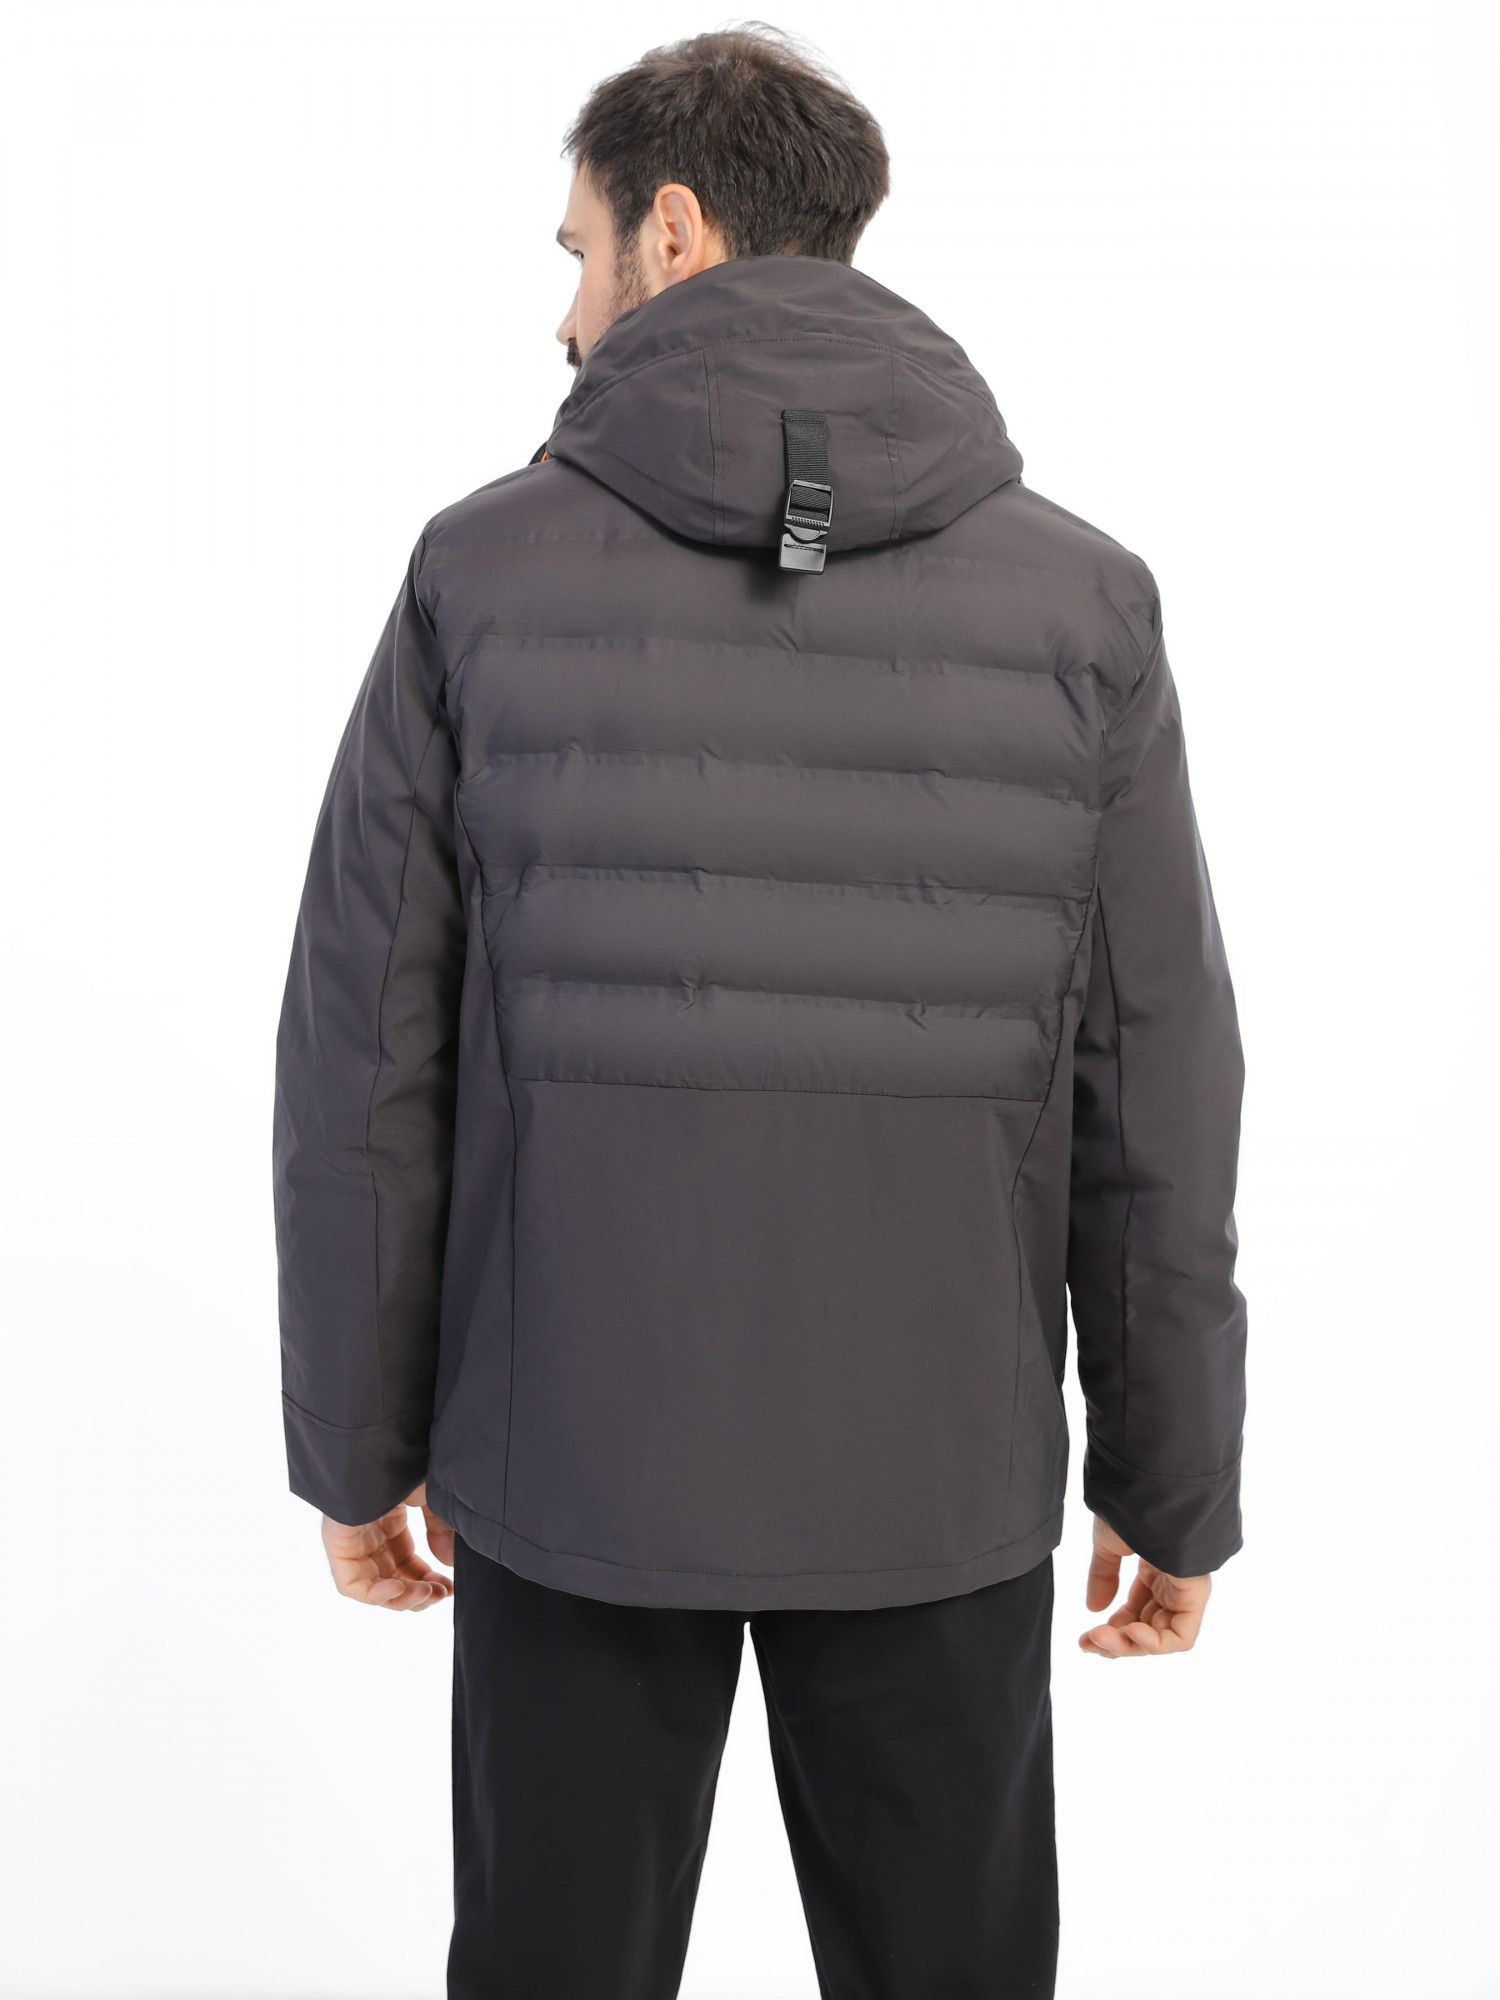 Куртка мужская Radder Tronco черная 123301-010 изображение 4